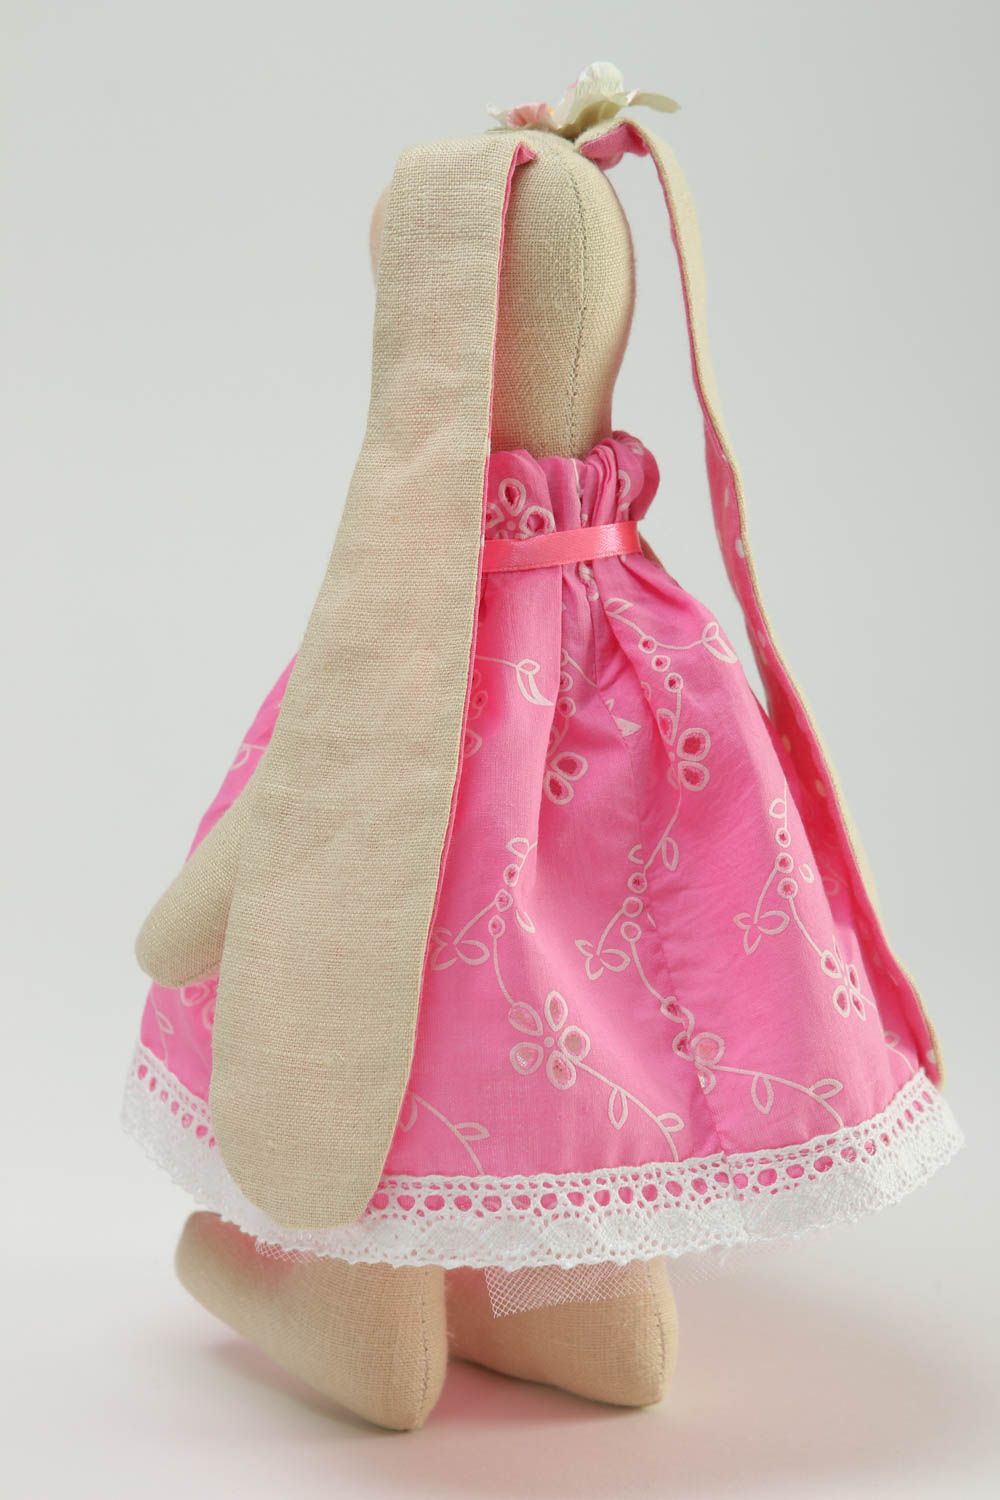 Игрушка ручной работы игрушка зайка в розовом платье оригинальная игрушка  фото 4